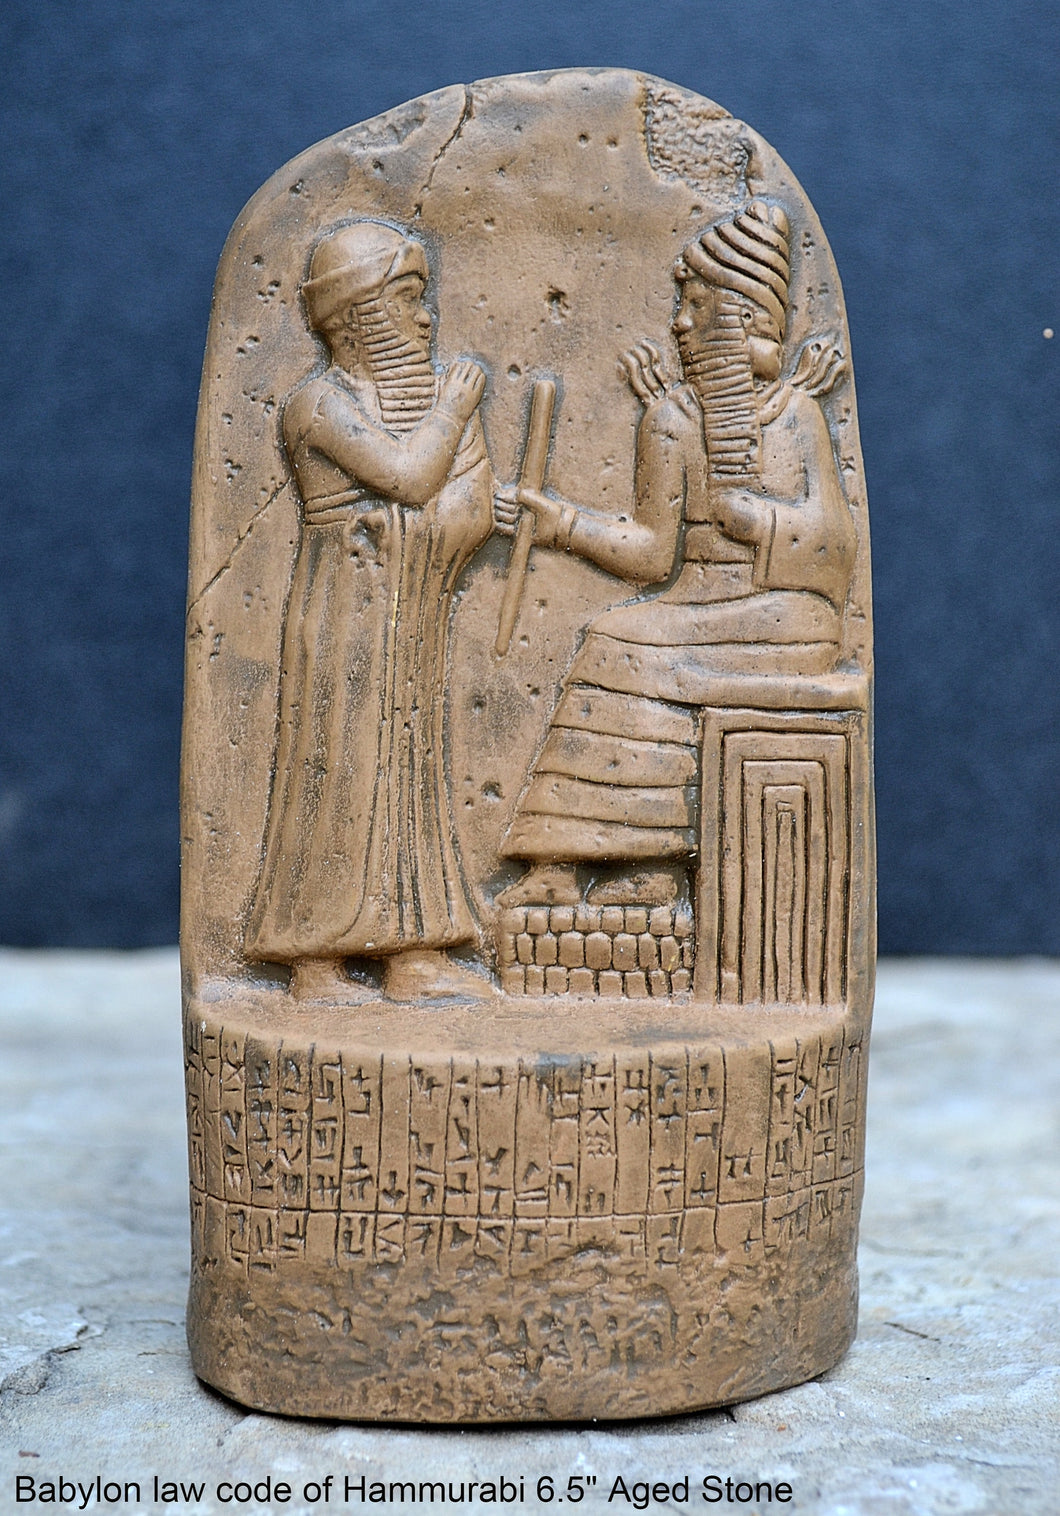 Babylon law code of Hammurabi Fragment Sculptural wall relief plaque www.Neo-Mfg.com 6.5